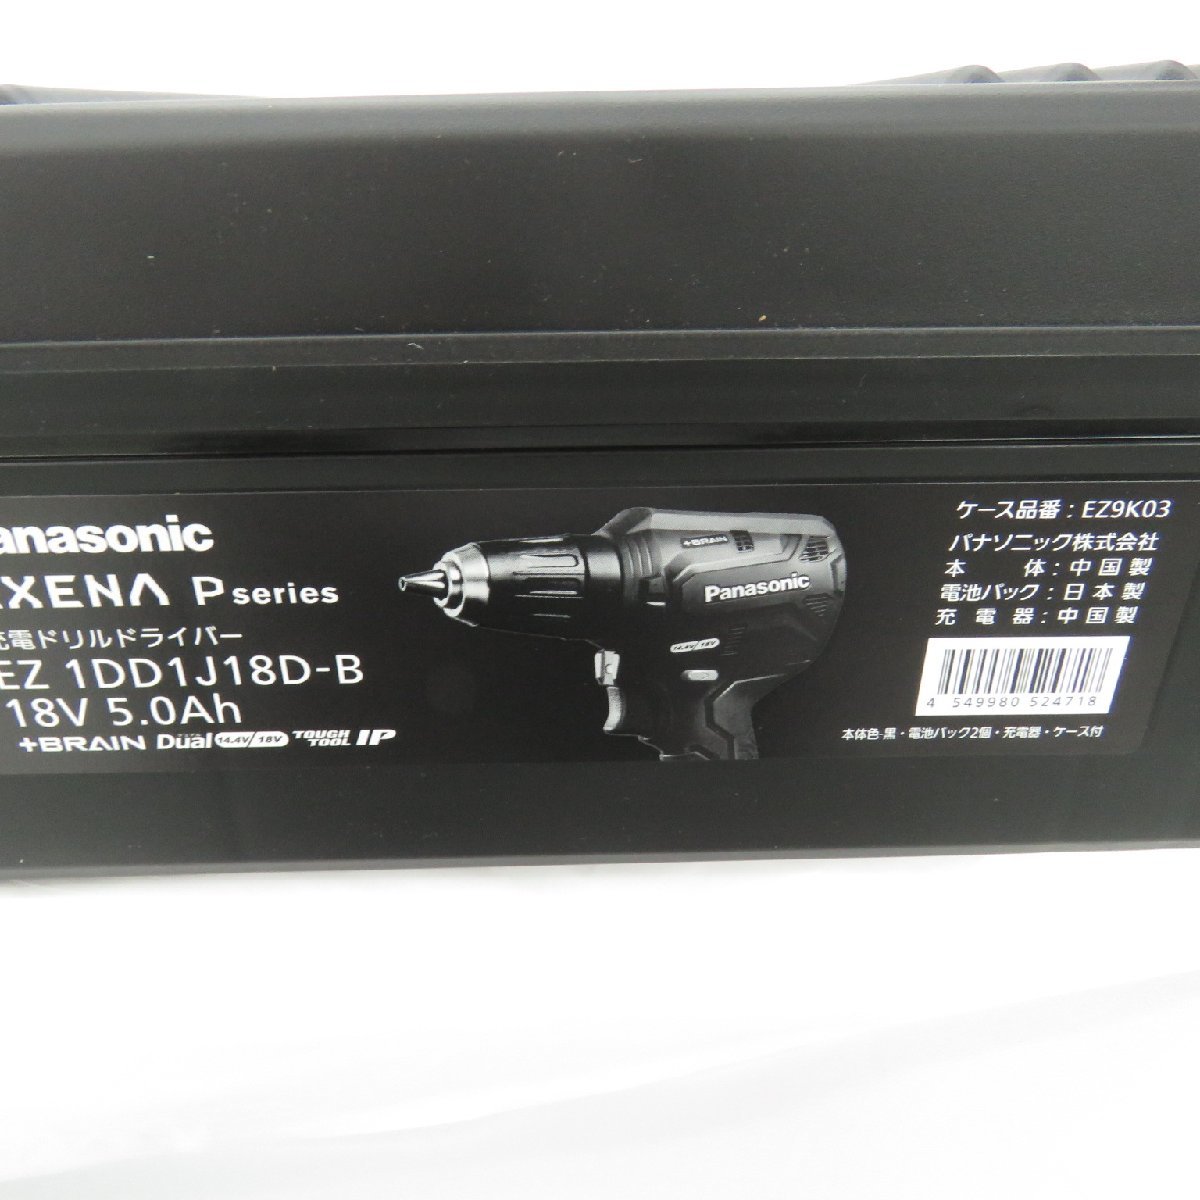 【未使用品】Panasonic パナソニック 充電ドリルドライバー EXENA P series EZ1DD1J18D-B ブラック 18V 5.0Ah 11440059 1209_画像3